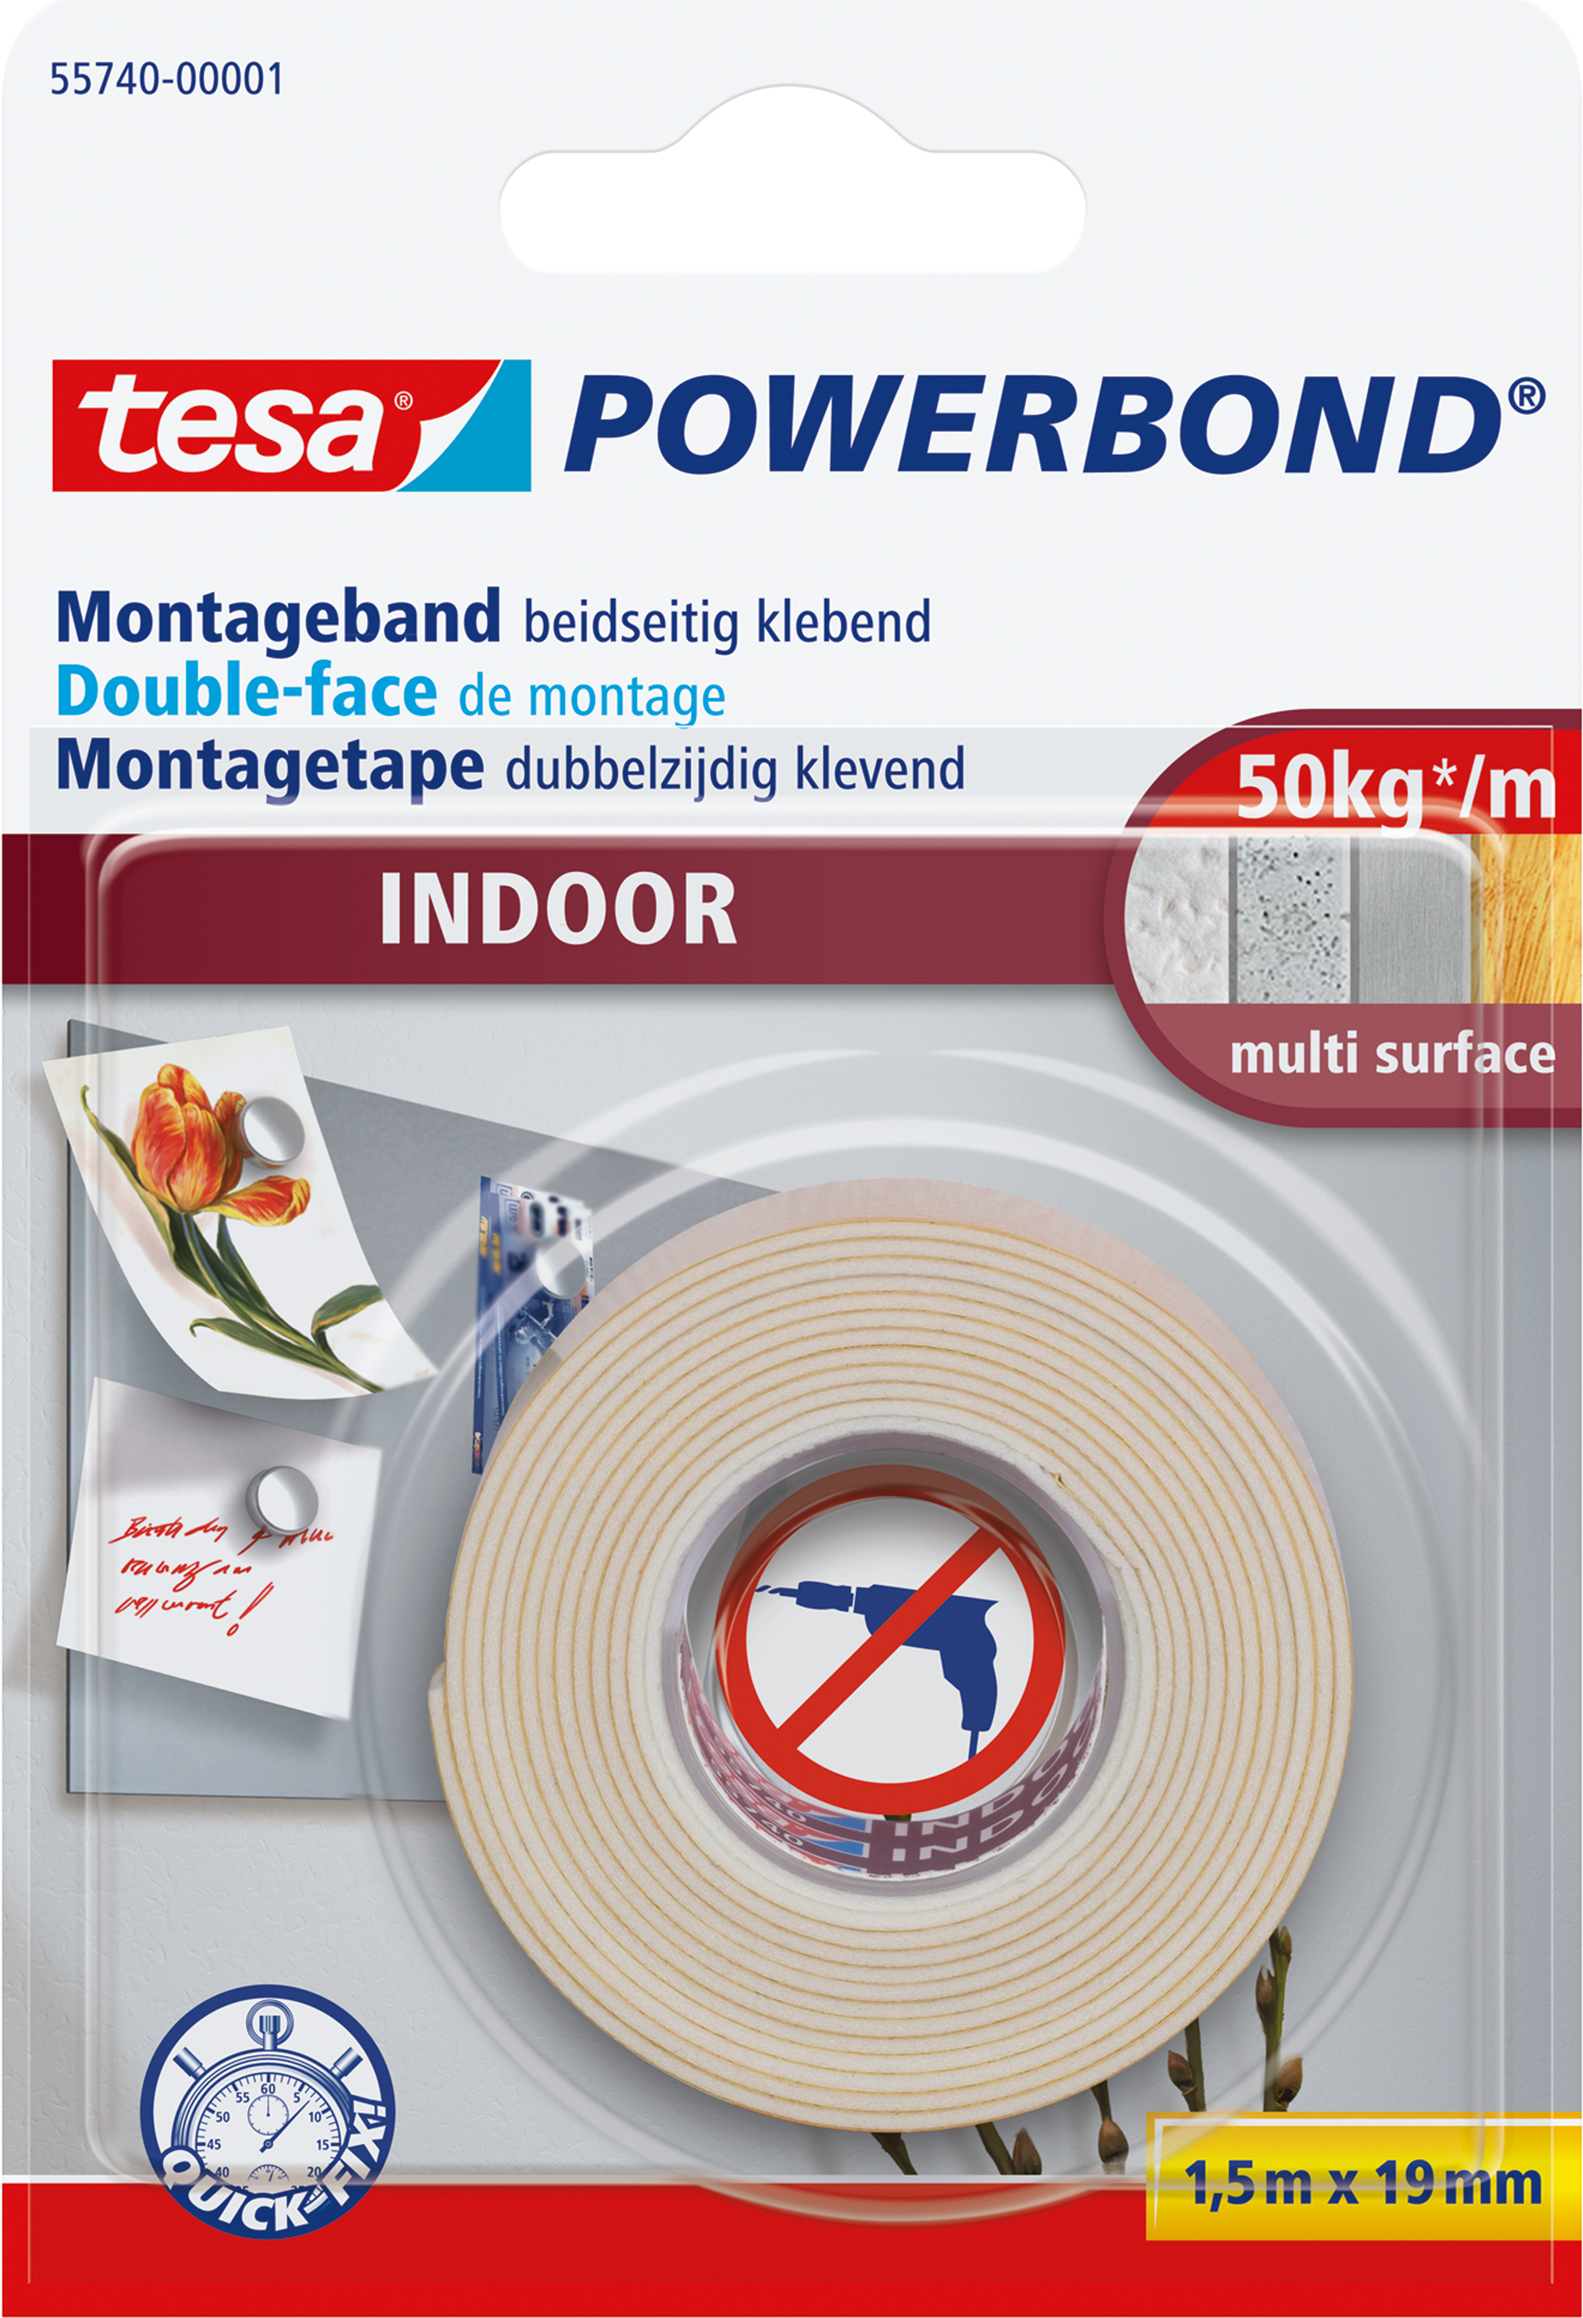 TESA Powerbond INDOOR (55740-00001-00)